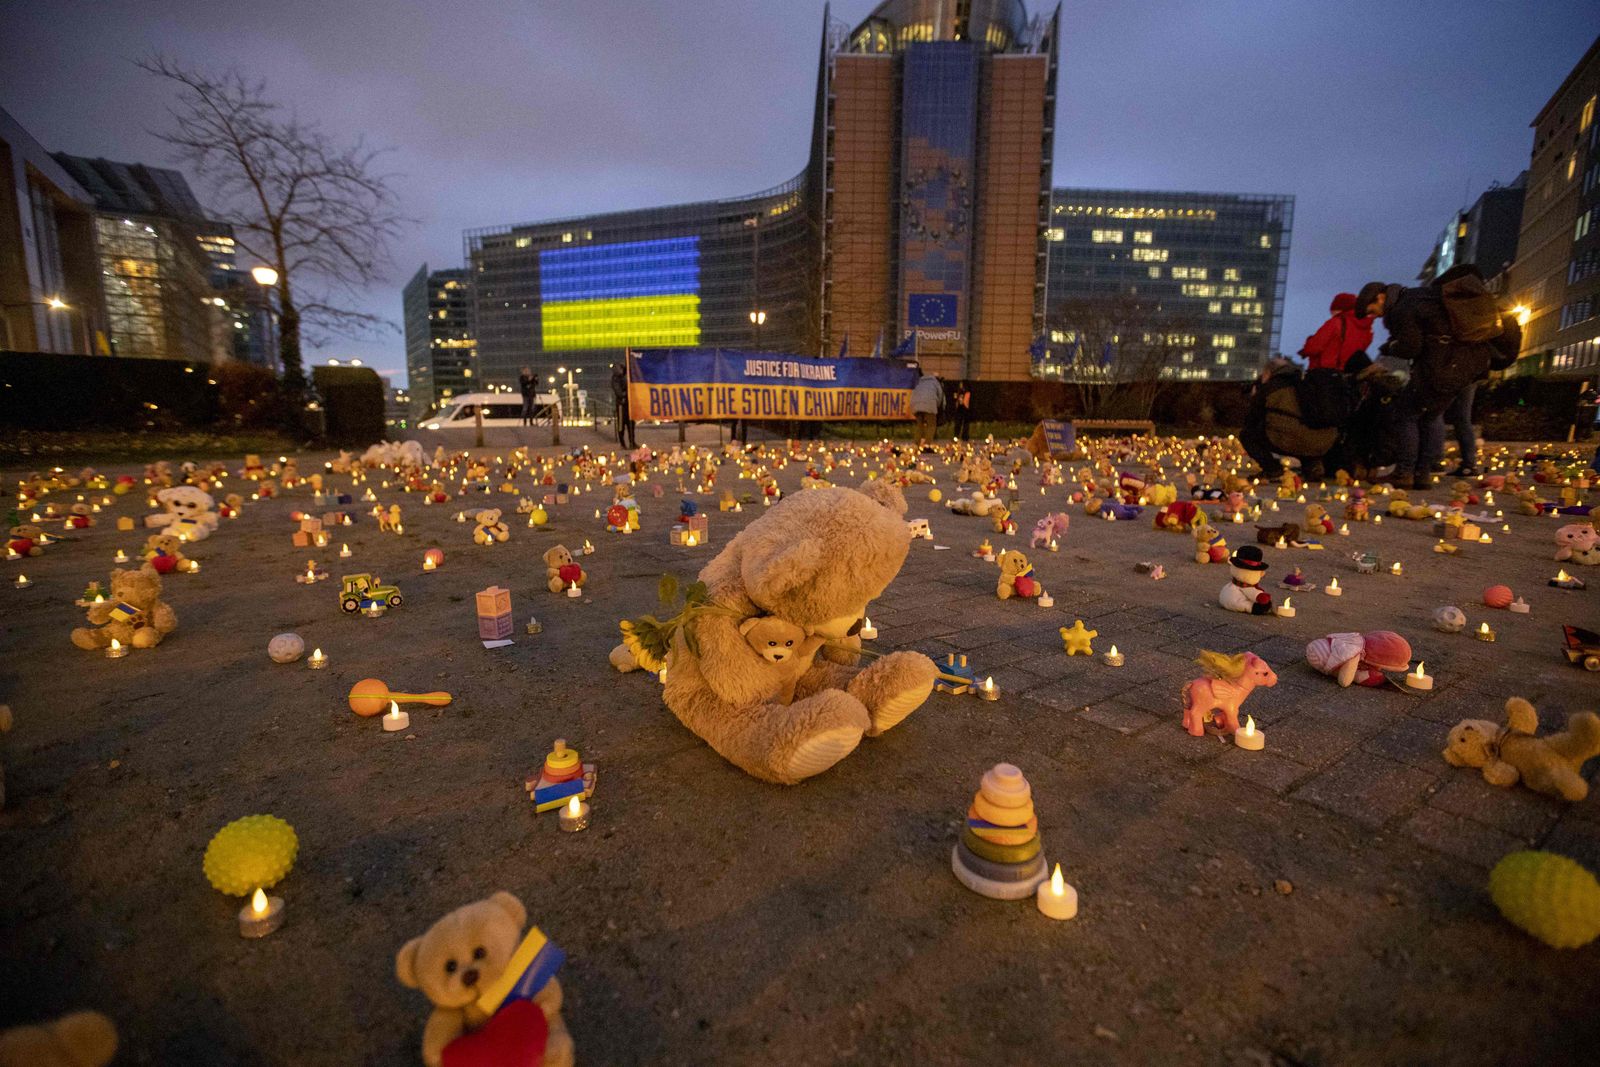 دمى وألعاب تمثل الأطفال الذين اختطفوا في أعقاب الحرب في أوكرانيا خلال فعالية نظمها لاجئون أوكرانيون في ميدان شومان في بروكسل. 23 فبراير 2023 - AFP